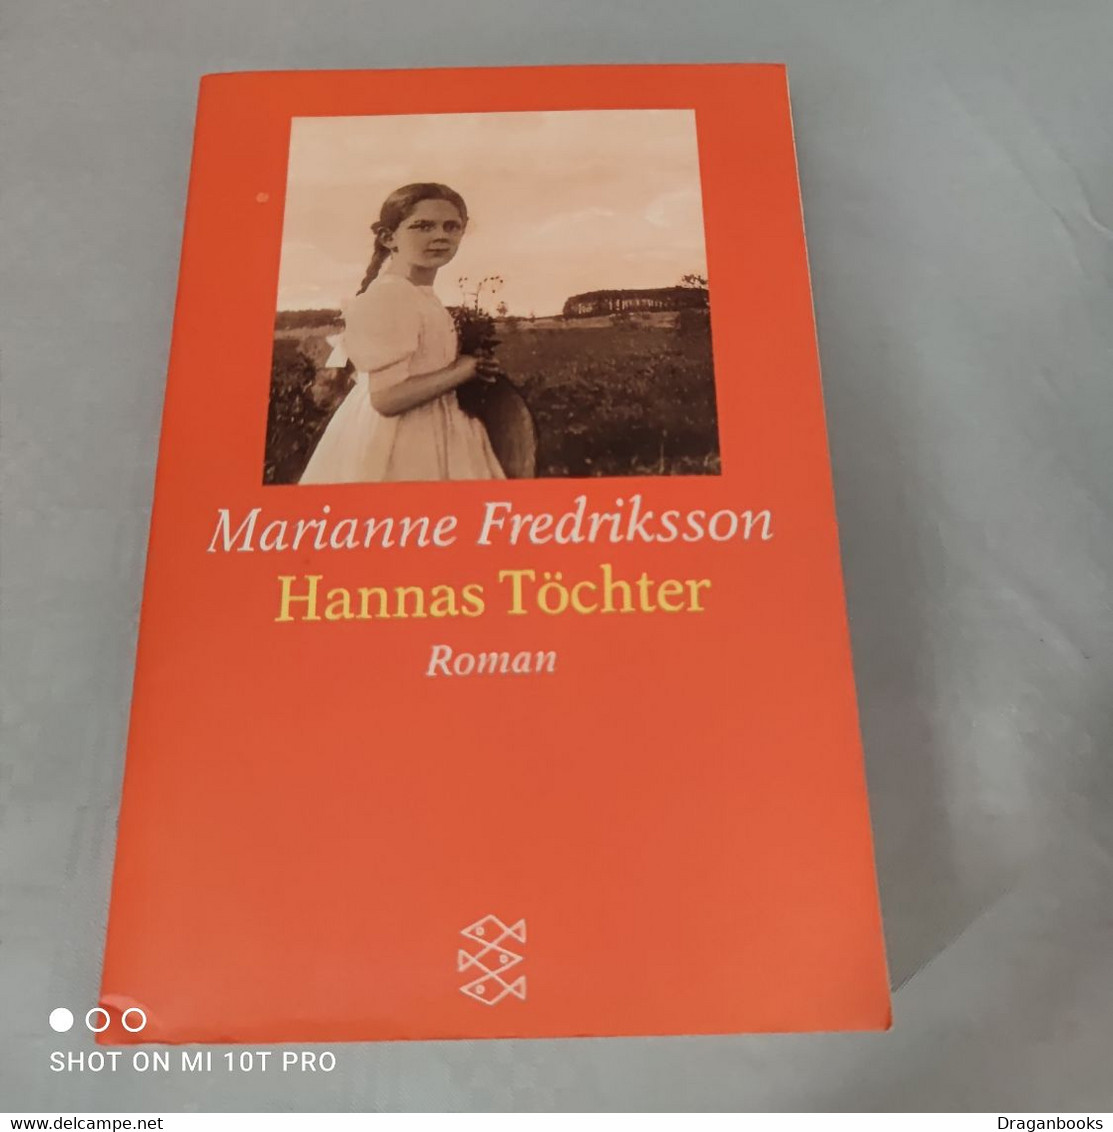 Marianne Fredriksson - Hannas Töchter - Entertainment